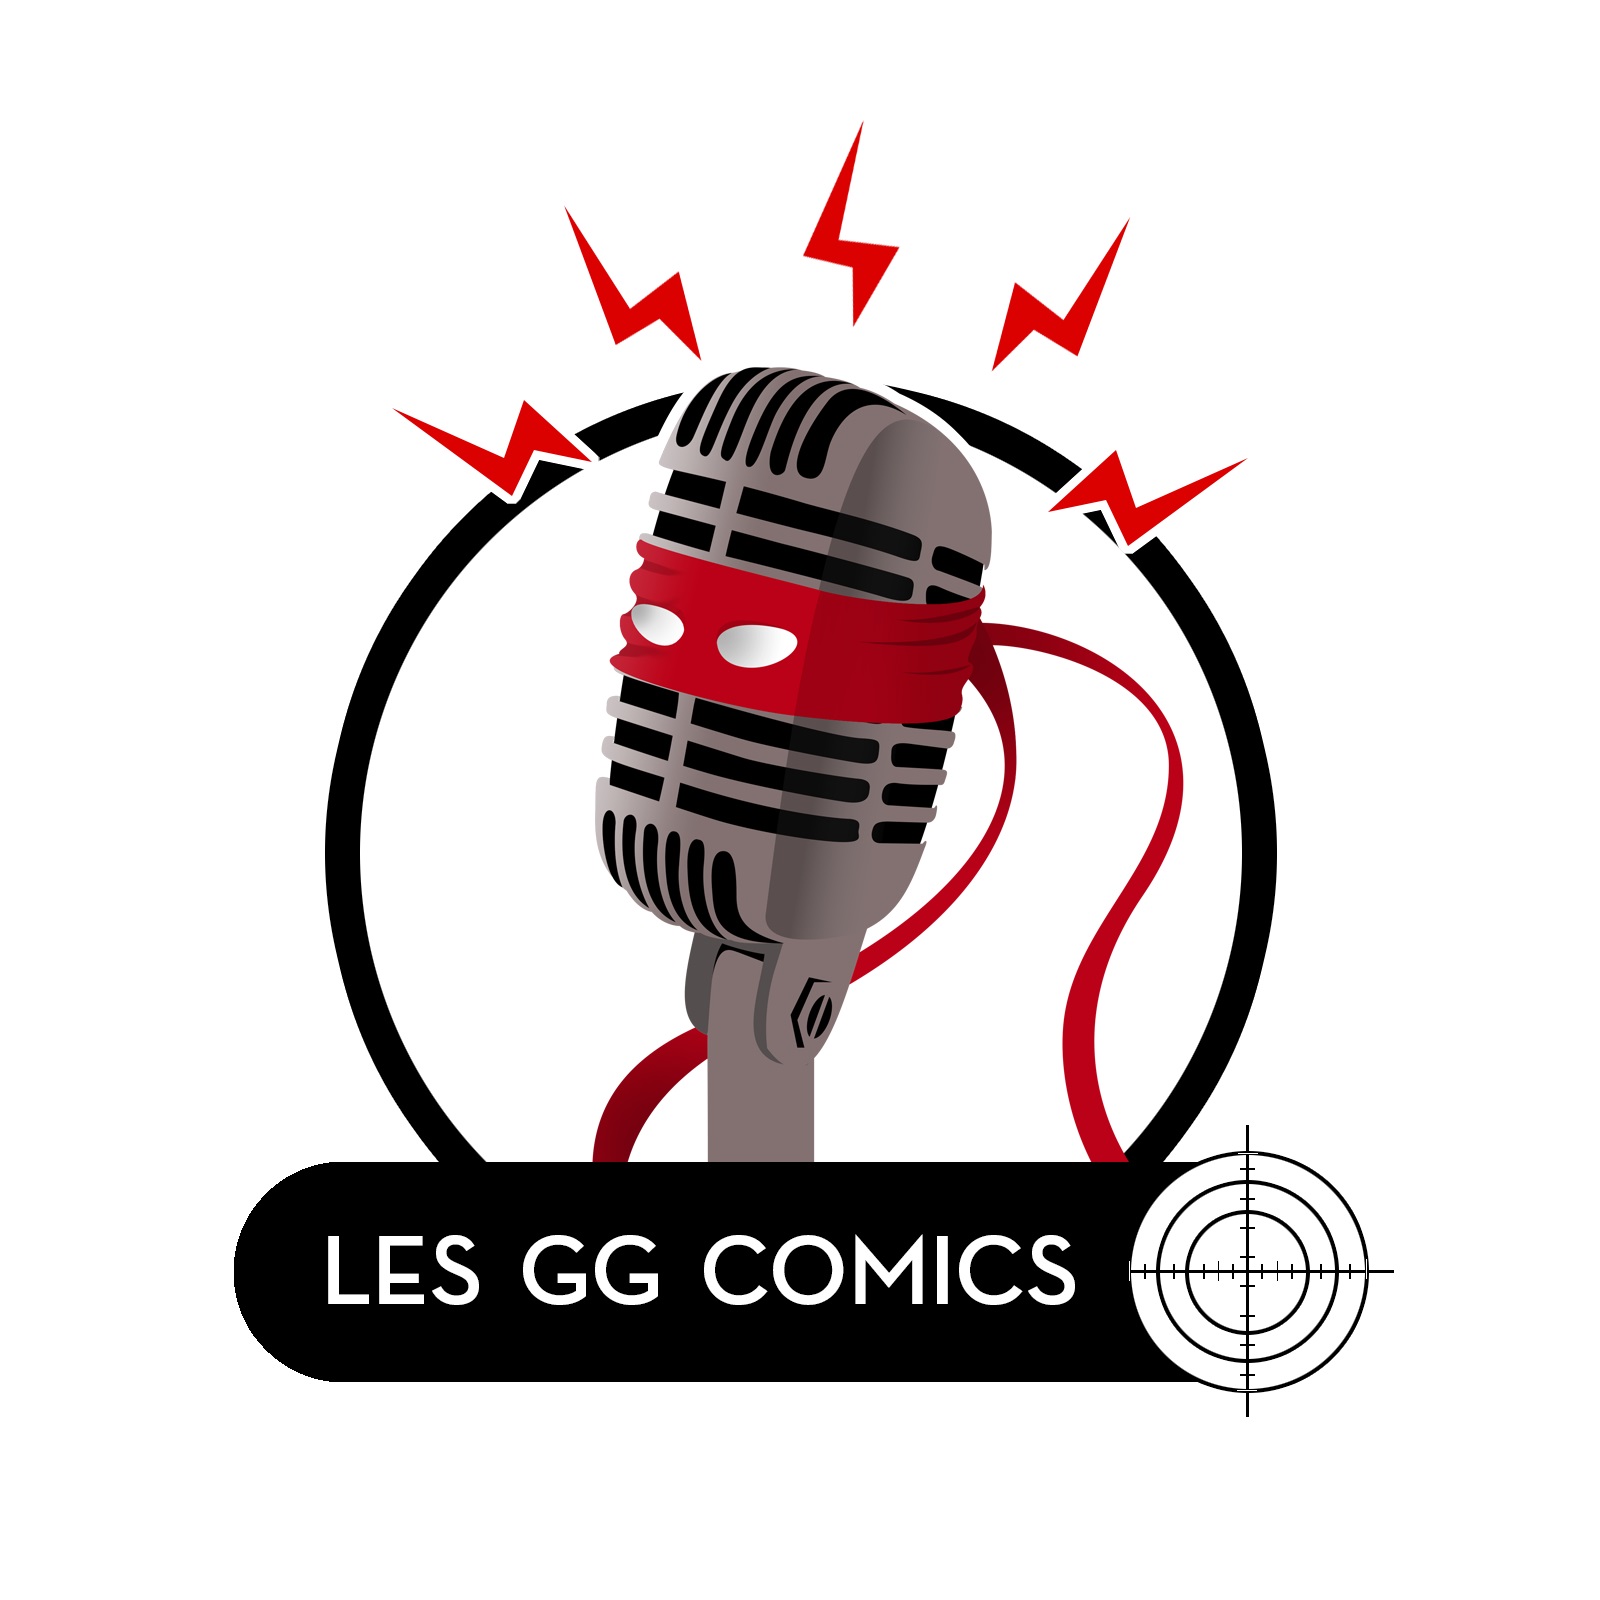 Les GG comics #73 : Comics et traductions